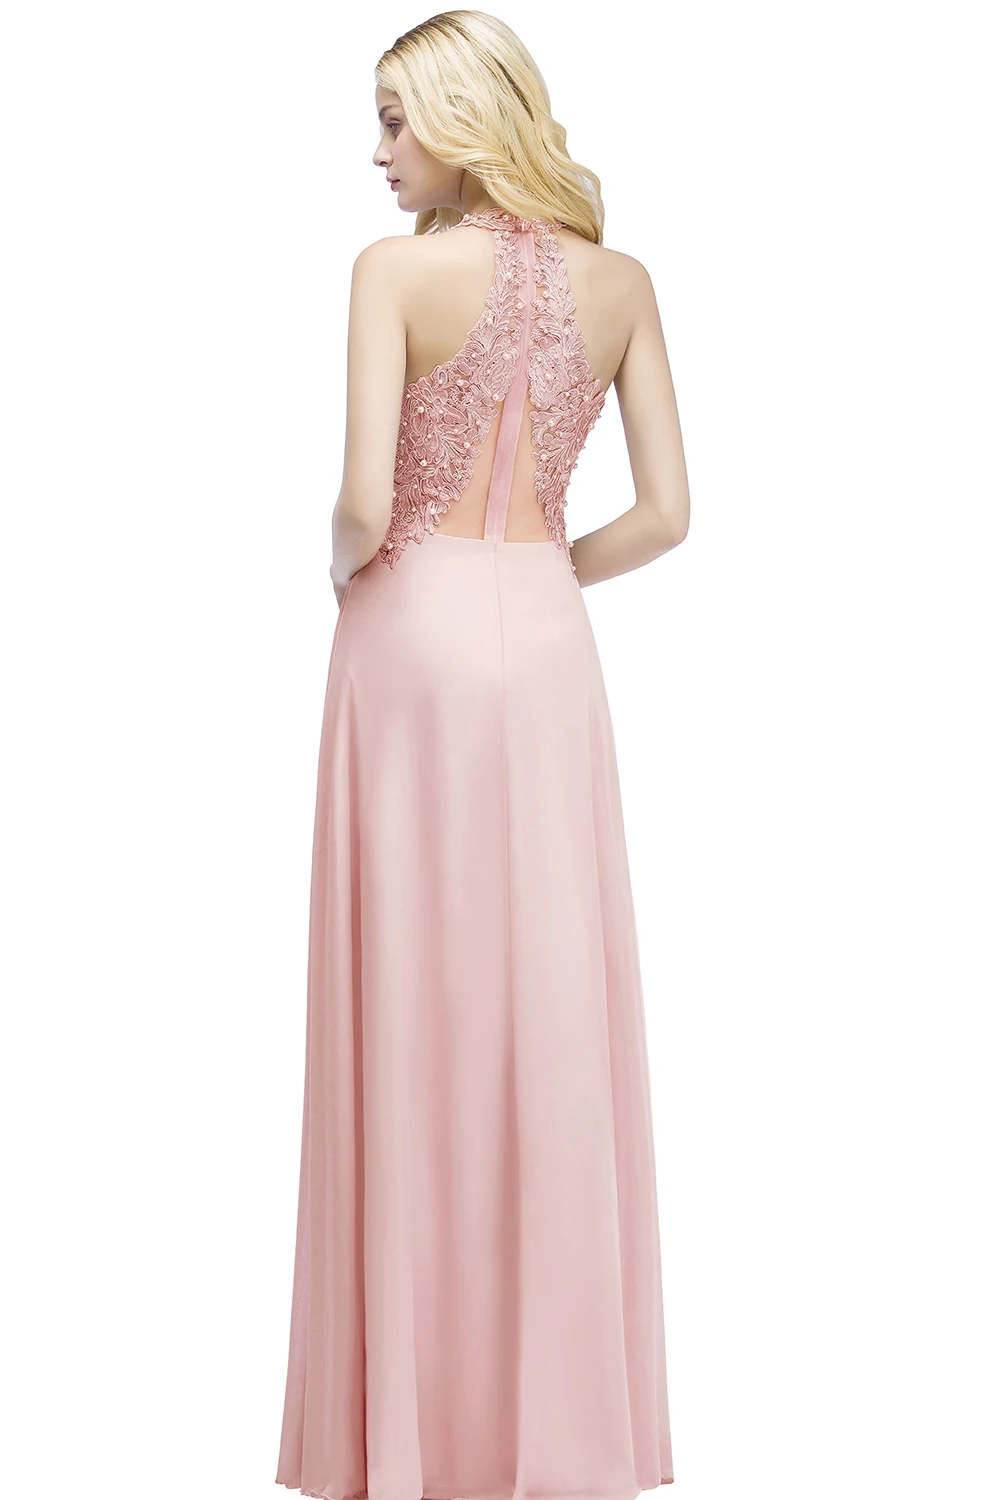 Vestido de festa/розовое длинное короткое вечернее платье с v-образным вырезом и аппликацией, вечерние платья невесты с открытой спиной, бусины, жемчужины, вечерние платья для выпускного вечера